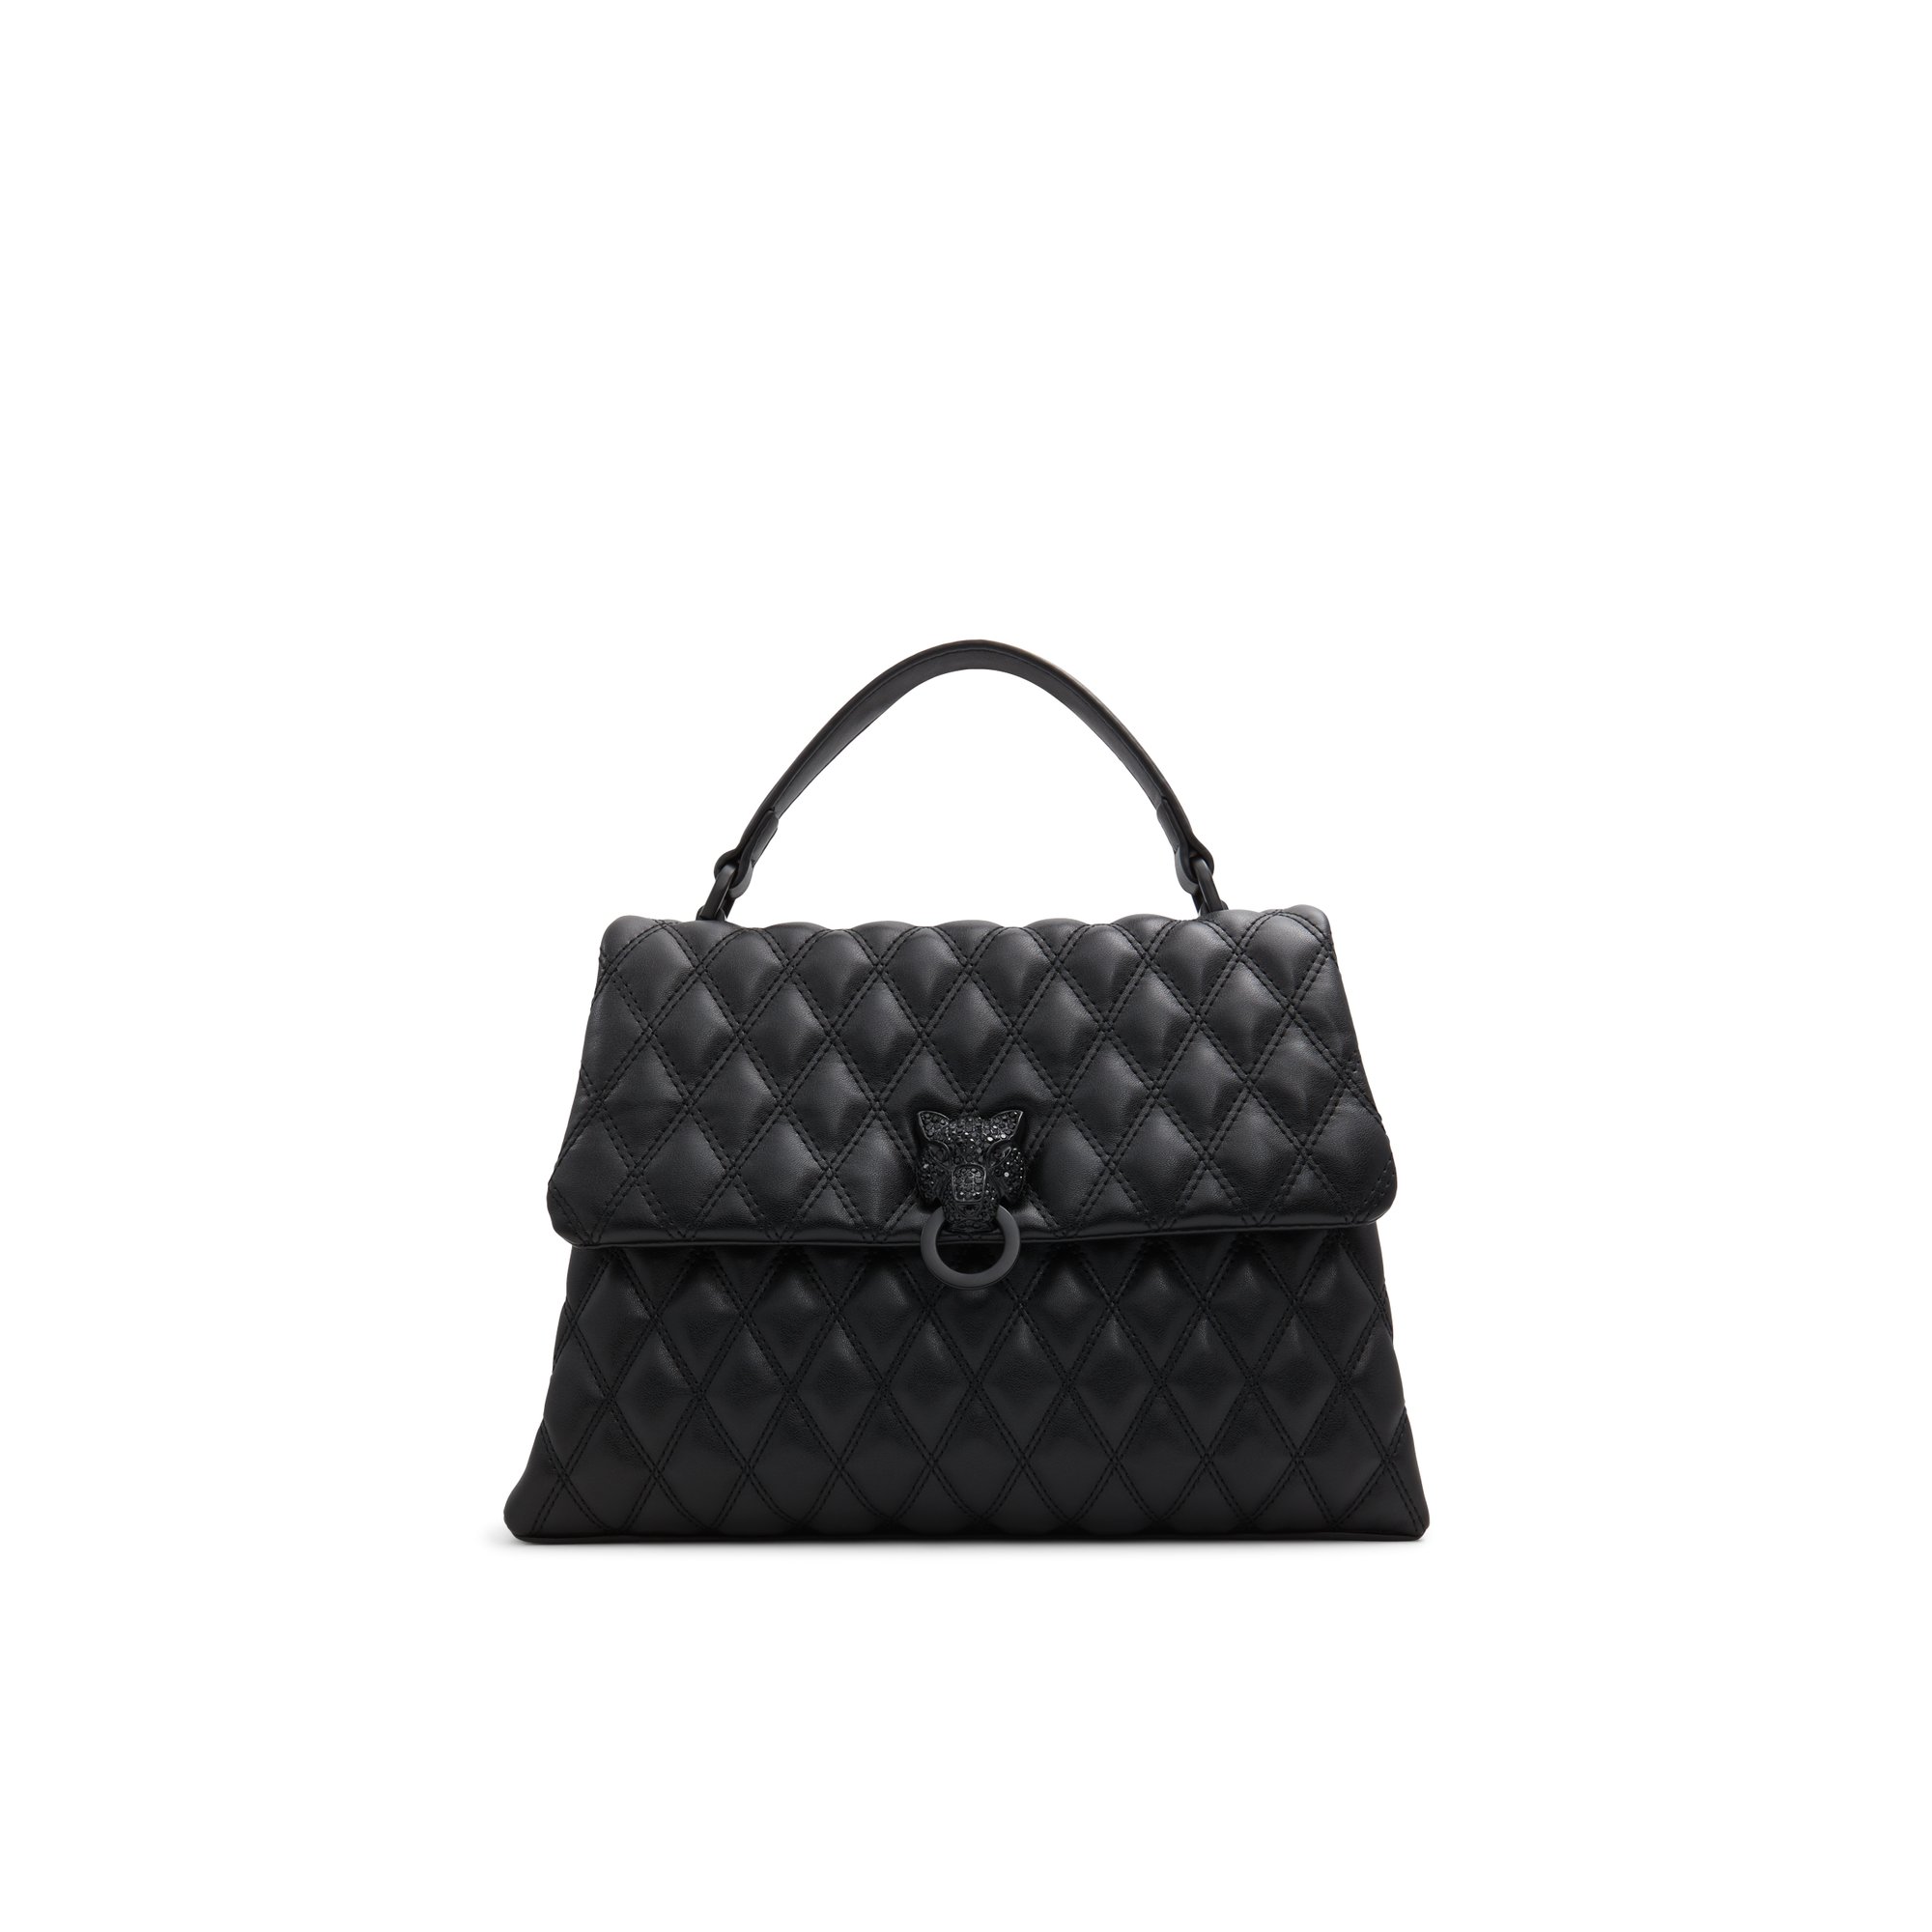 ALDO Topparox - Women's Top Handle Handbag - Black